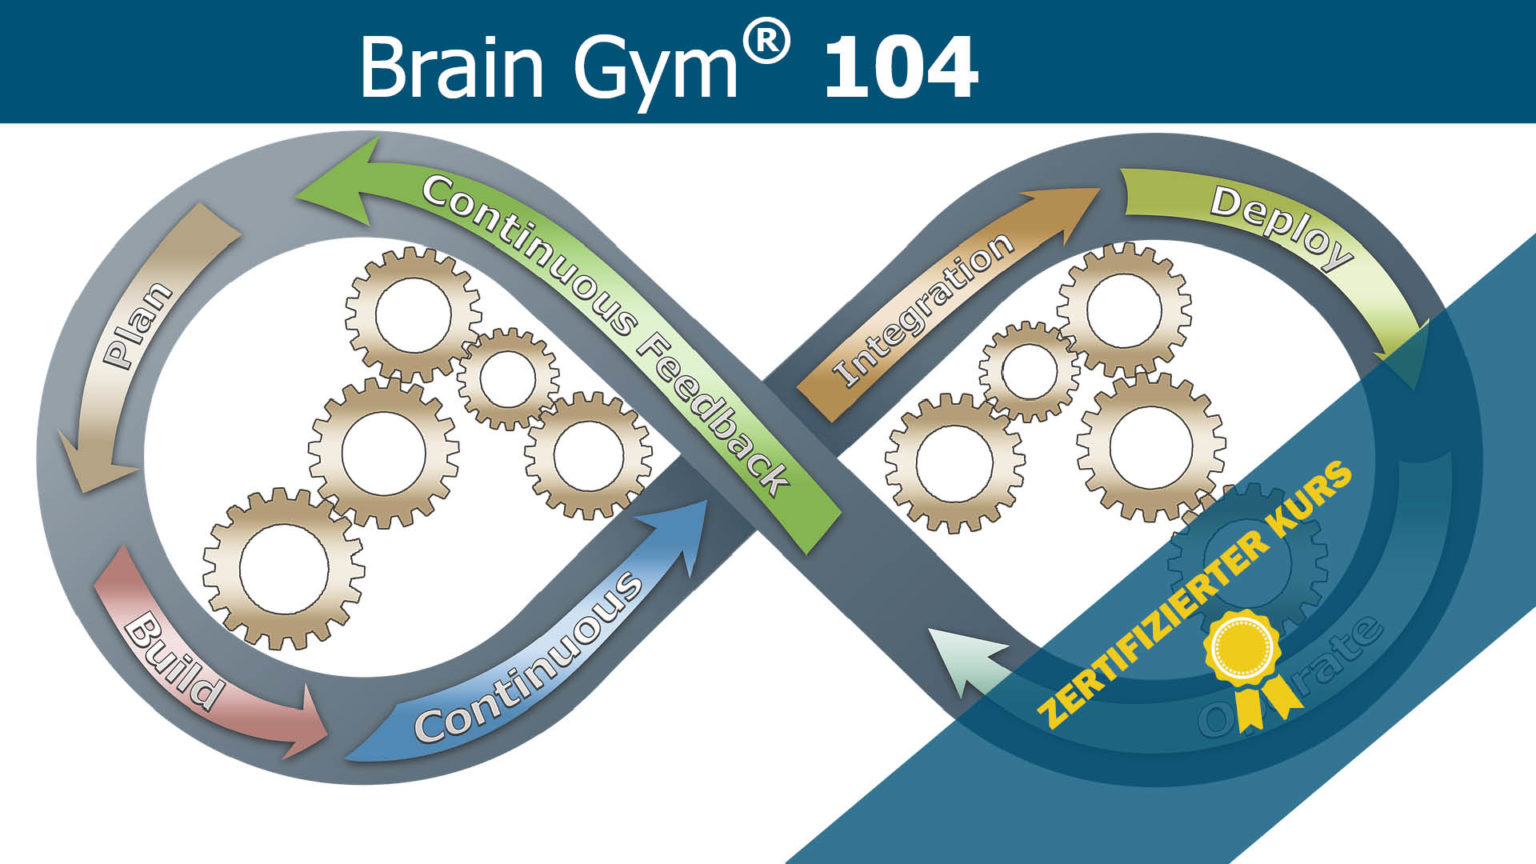 Brain Gym 104 Kurs, die 26 Brain Gym Bewegungen